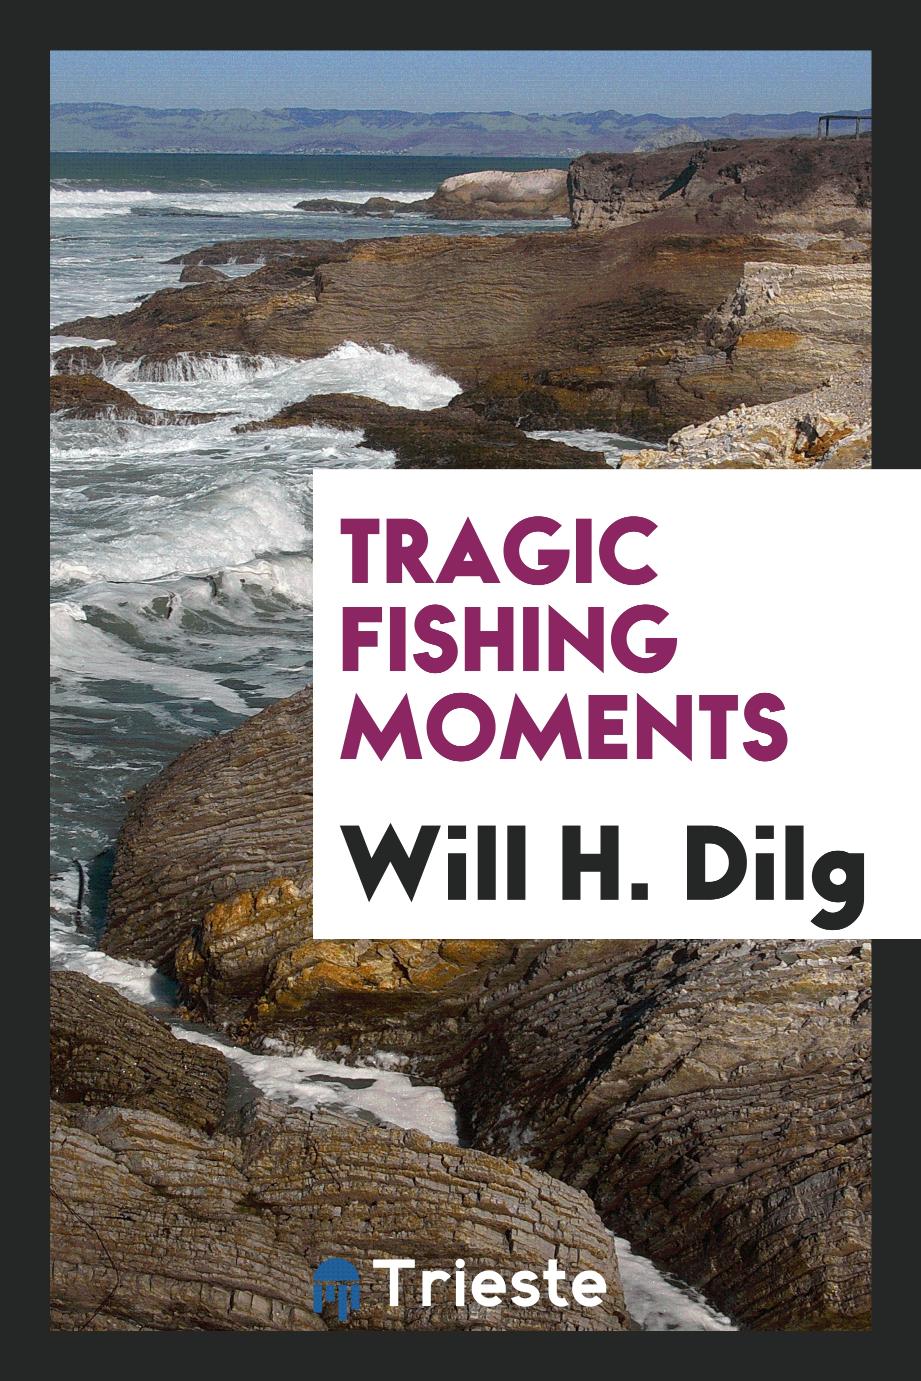 Tragic fishing moments